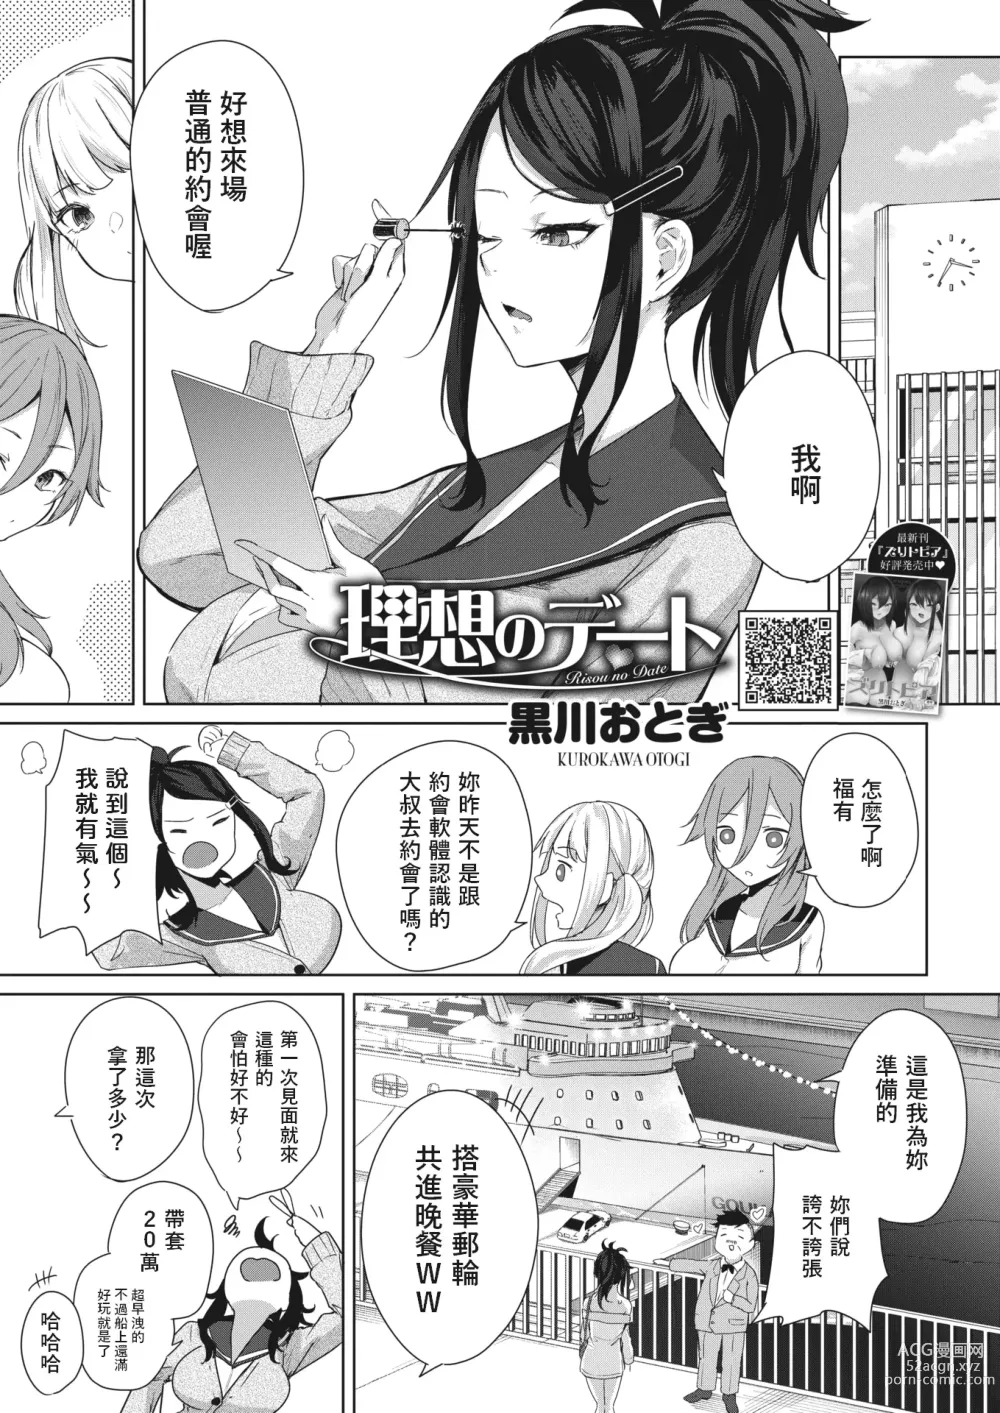 Page 1 of manga Risou no Date